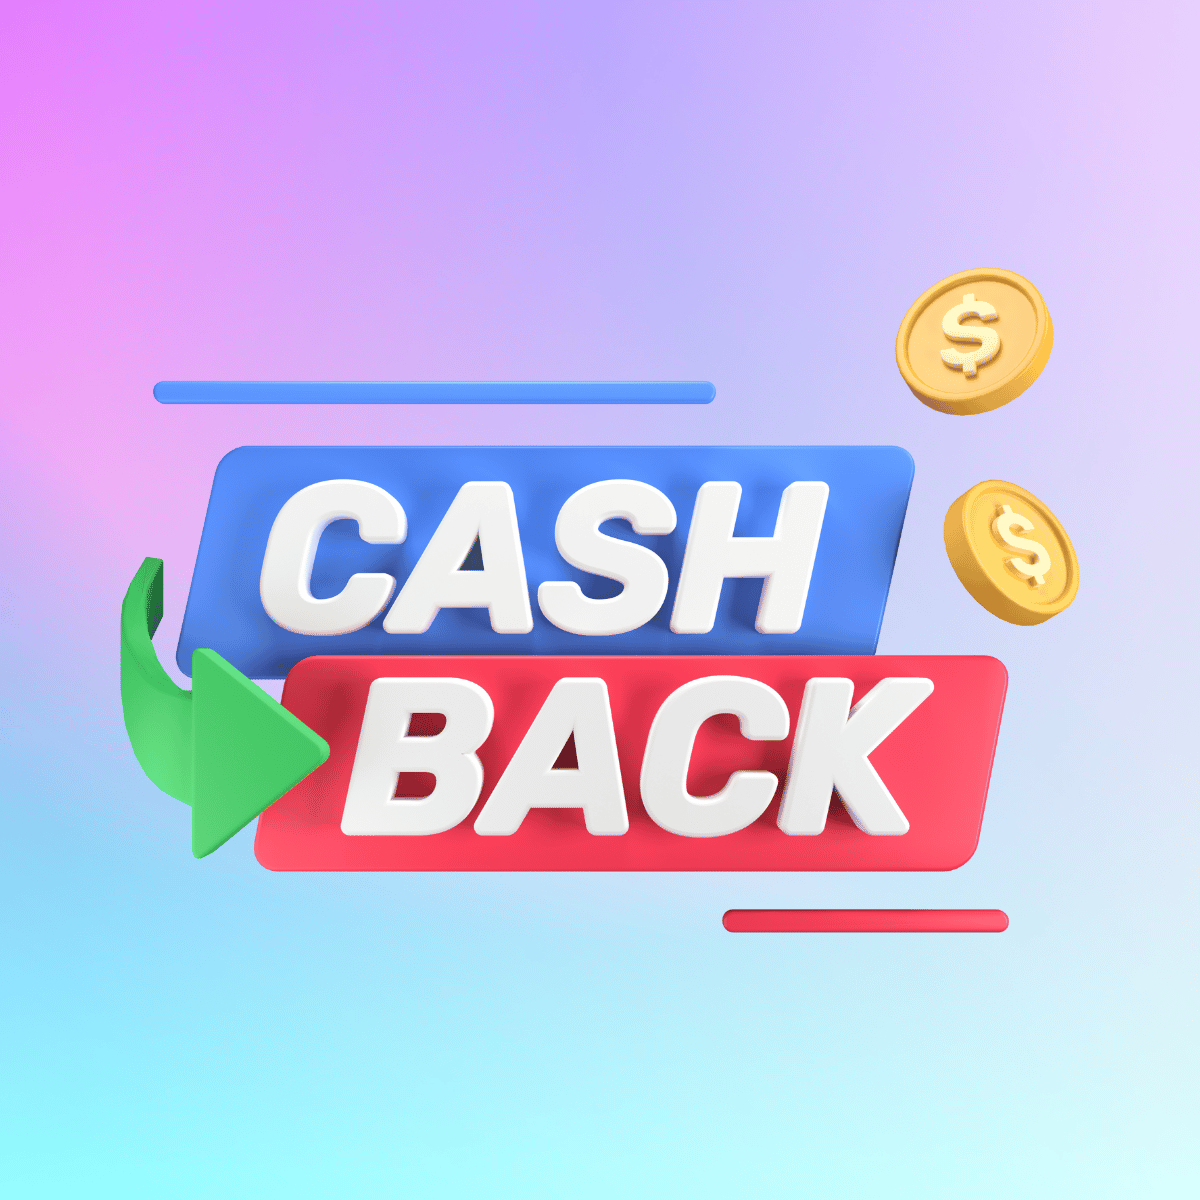 Gratitude CashBack for Reviews